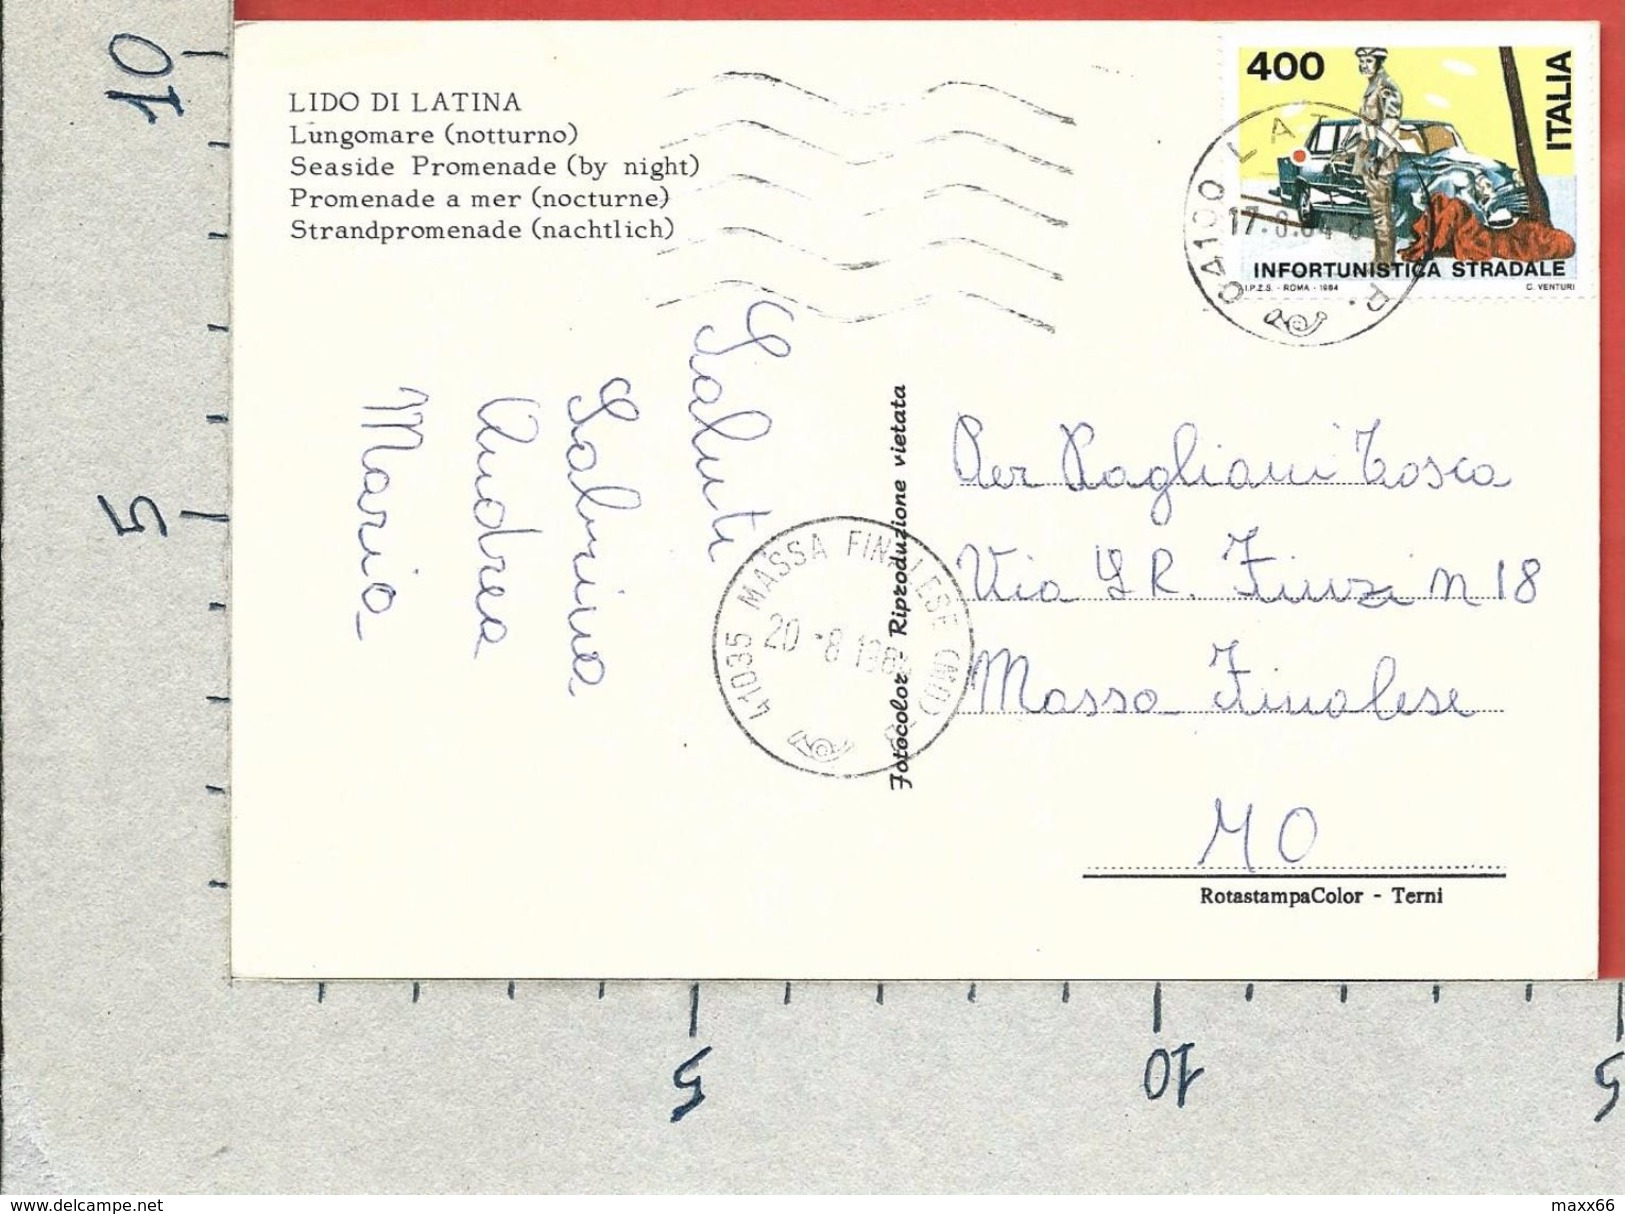 CARTOLINA VG ITALIA - Lido Di LATINA - Lungomare Notturno - 10 X 15 - ANN. 1984 INFORTUNISTICA STRADALE - Latina